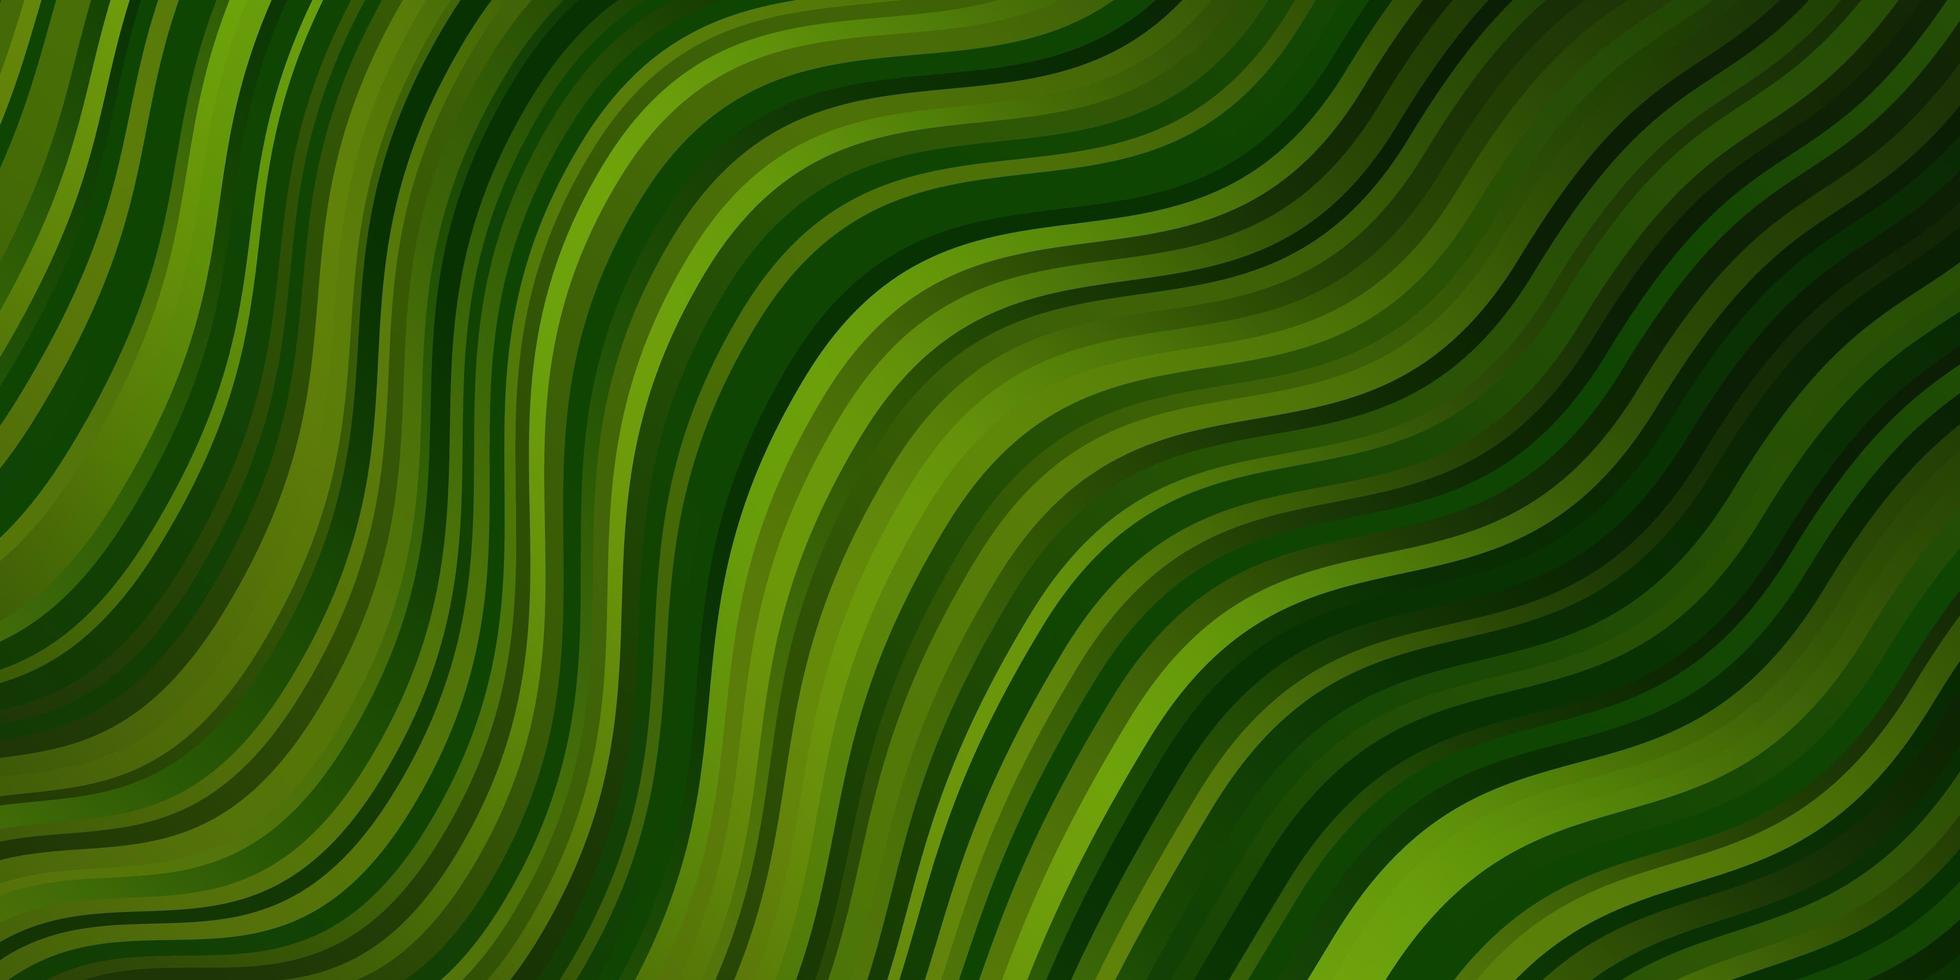 pano de fundo de vetor verde claro com ilustração de gradiente de arco circular em estilo simples com padrão de arcos para anúncios comerciais